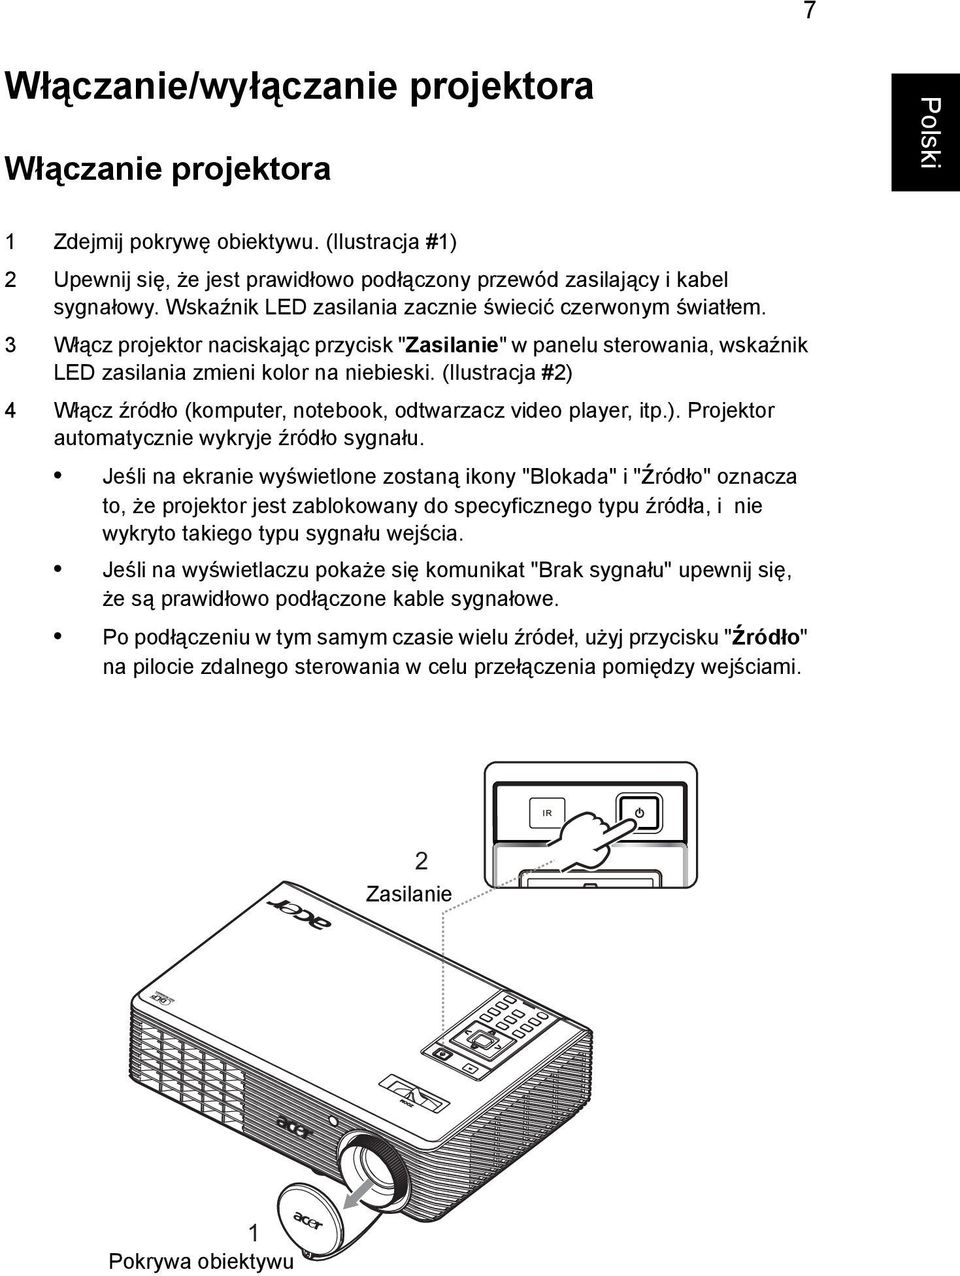 (Ilustracja #2) 4 Włącz źródło (komputer, notebook, odtwarzacz video player, itp.). Projektor automatycznie wykryje źródło sygnału.